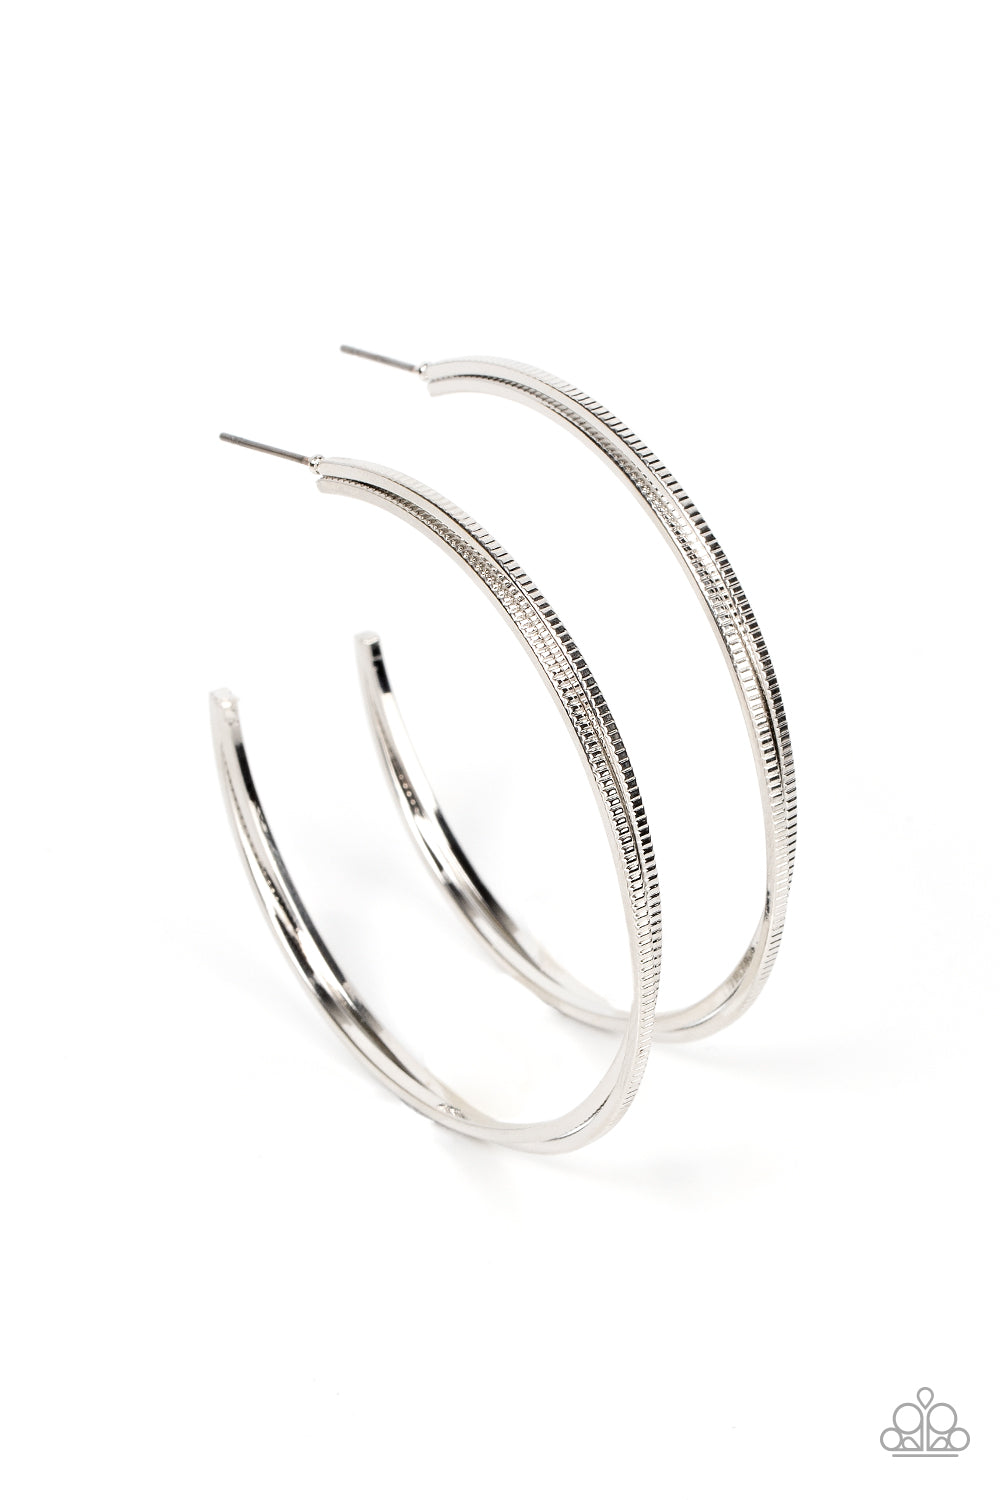 Monochromatic Curves - Silver earrings